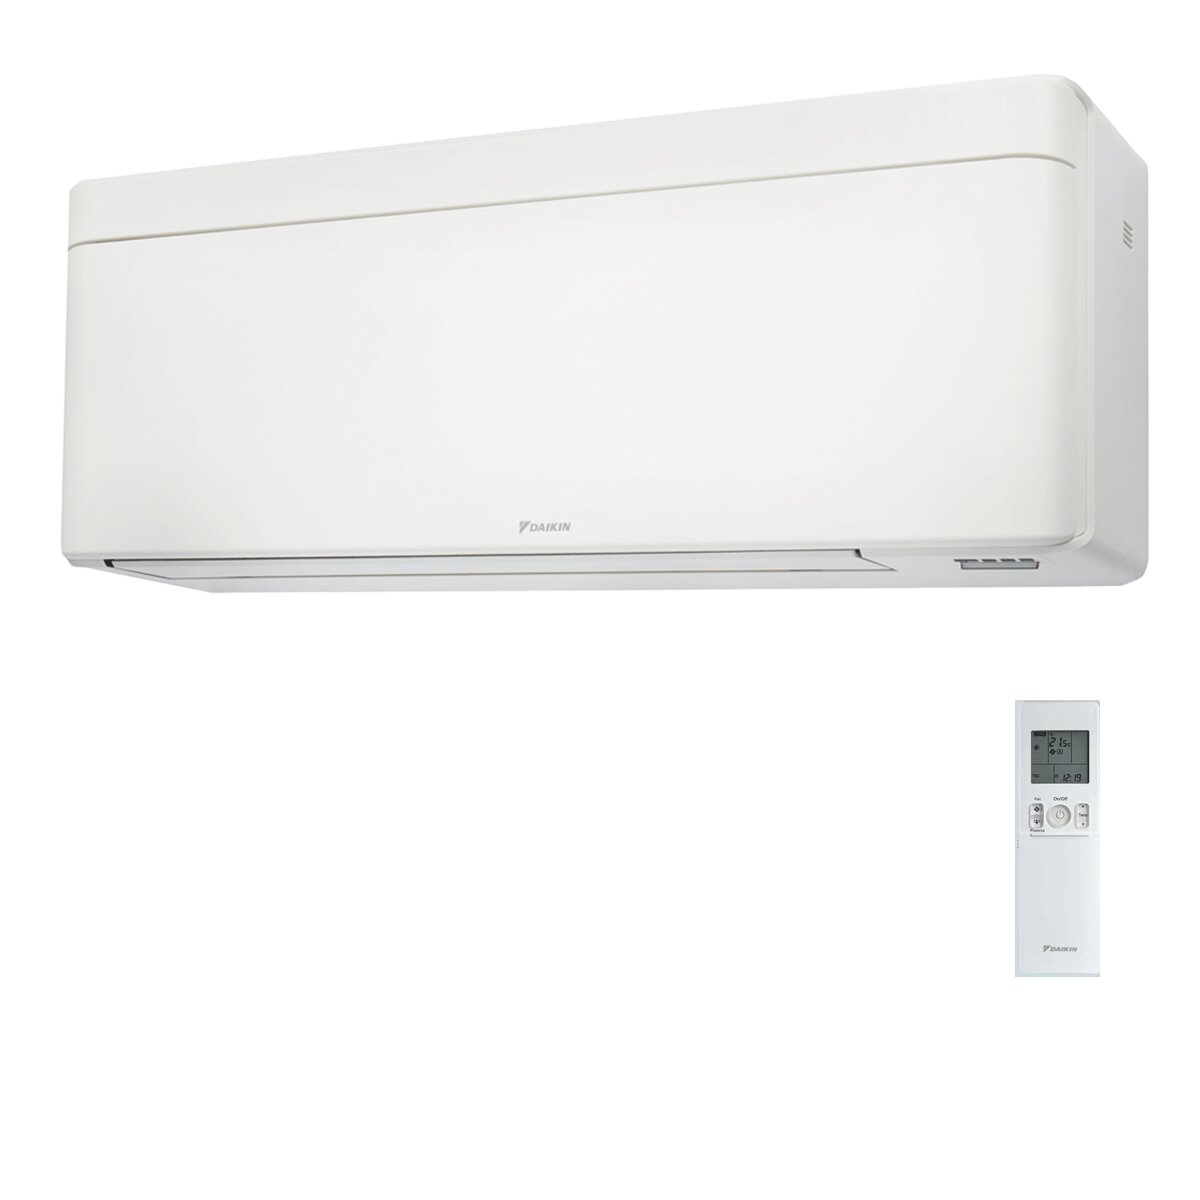 Daikin Stylish White trial split air conditioner 7000+9000+9000 BTU inverter A+++ wifi external unit 4 kW